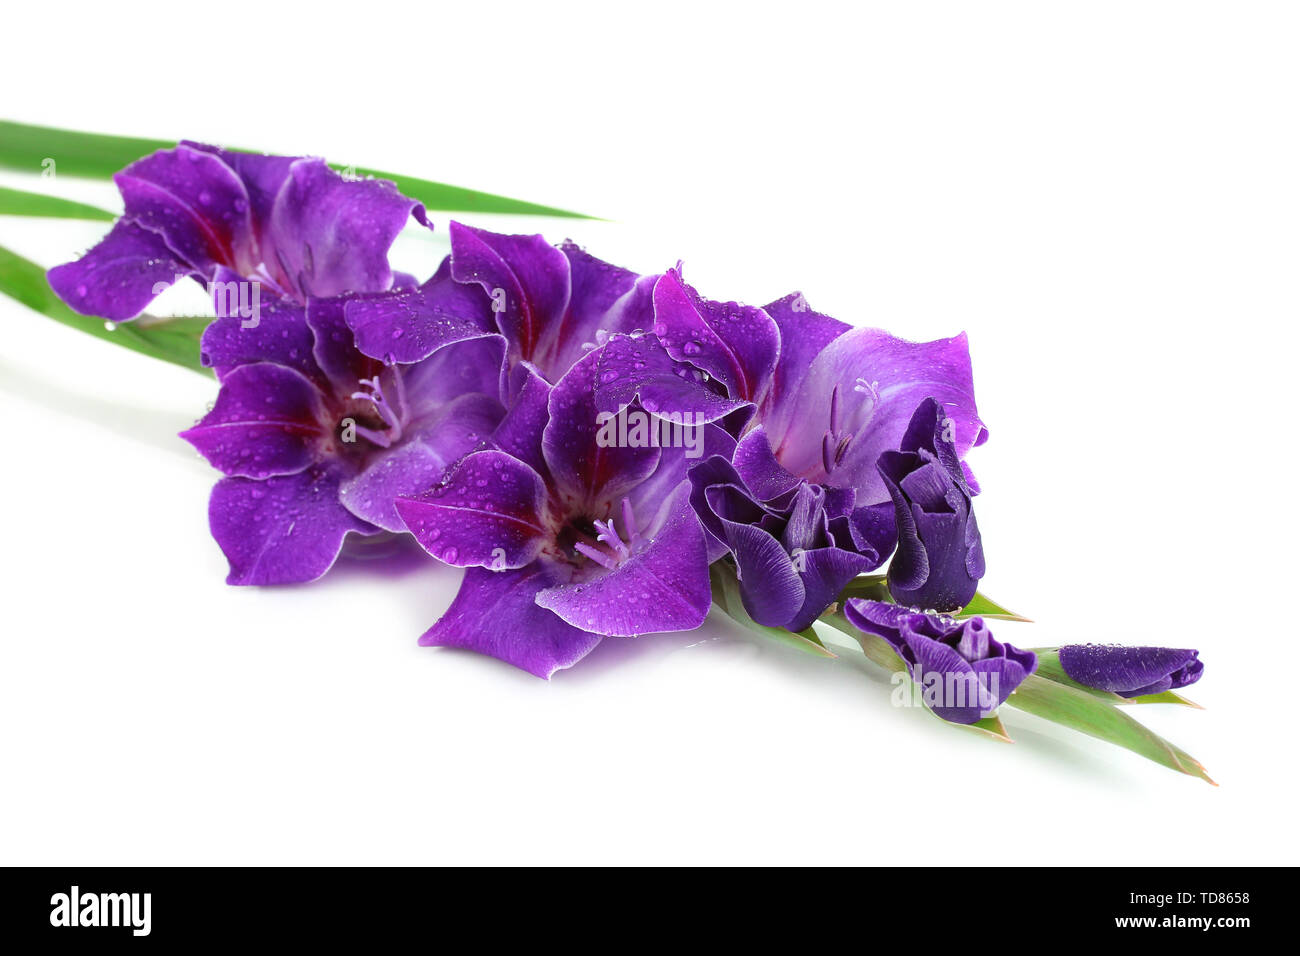 Beautiful gladiolus flower isolated on white Stock Photo